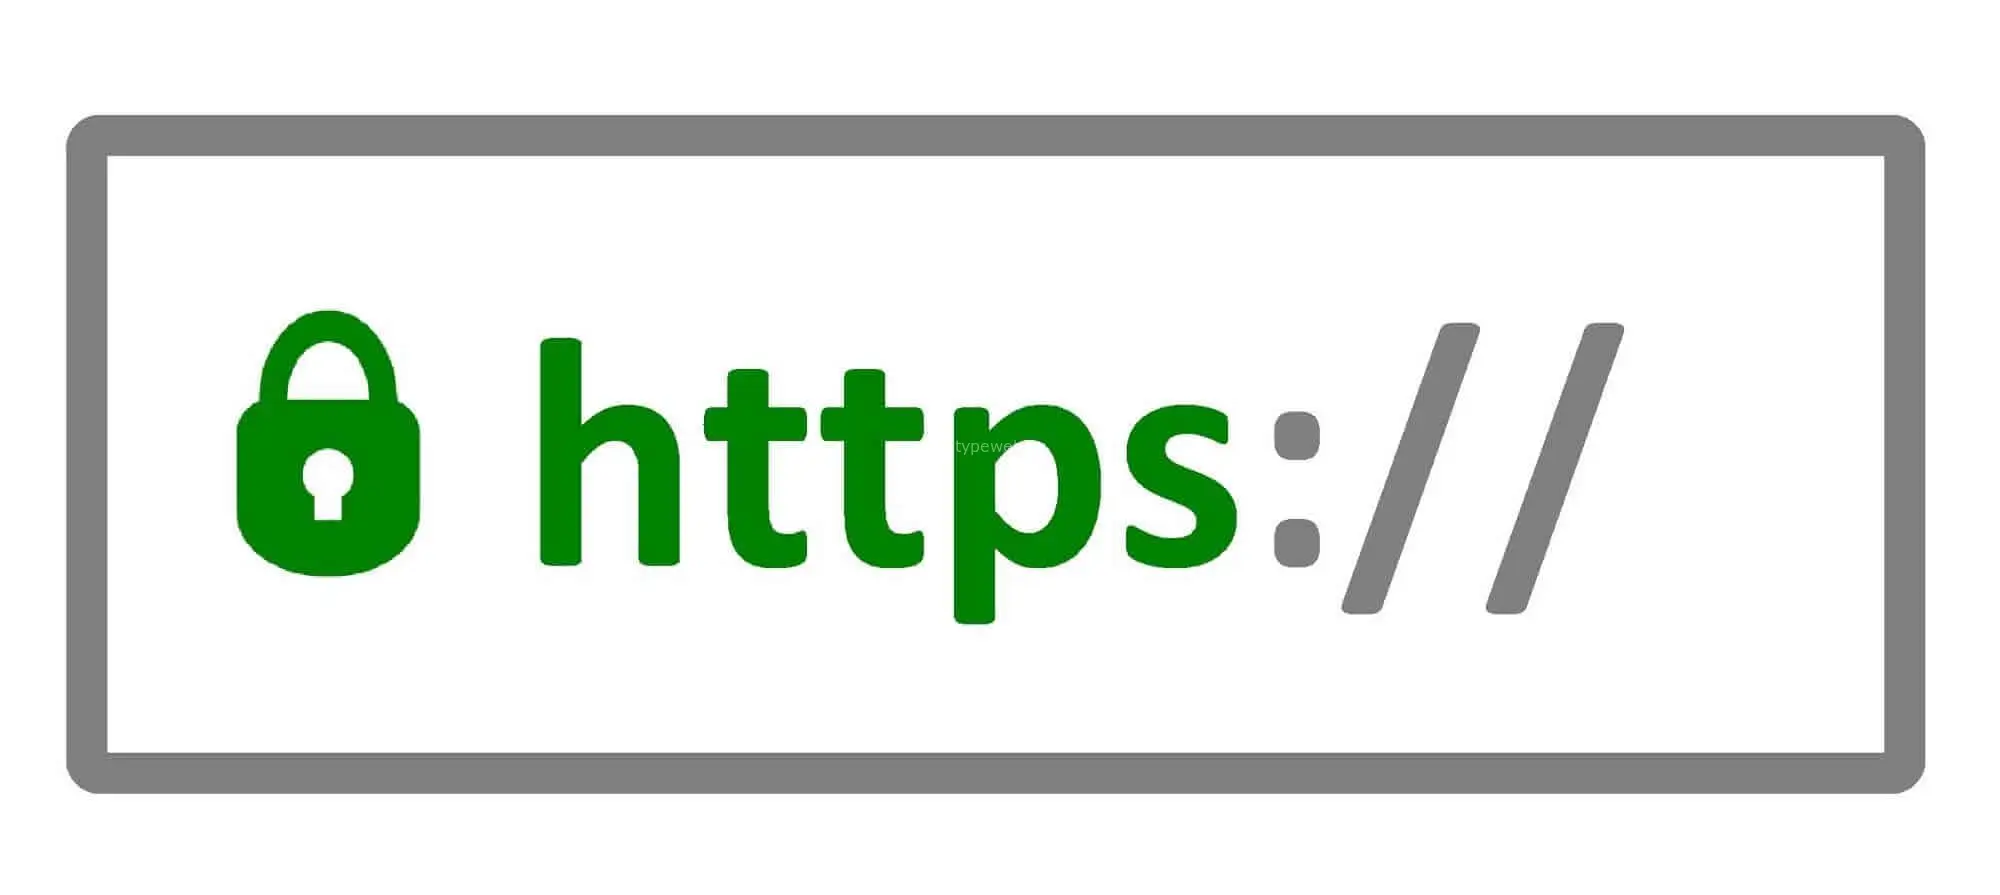 Сайт доступен по https. SSL сертификат. SSL логотип. Защищенное соединение SSL. Защищенное соединение значок.